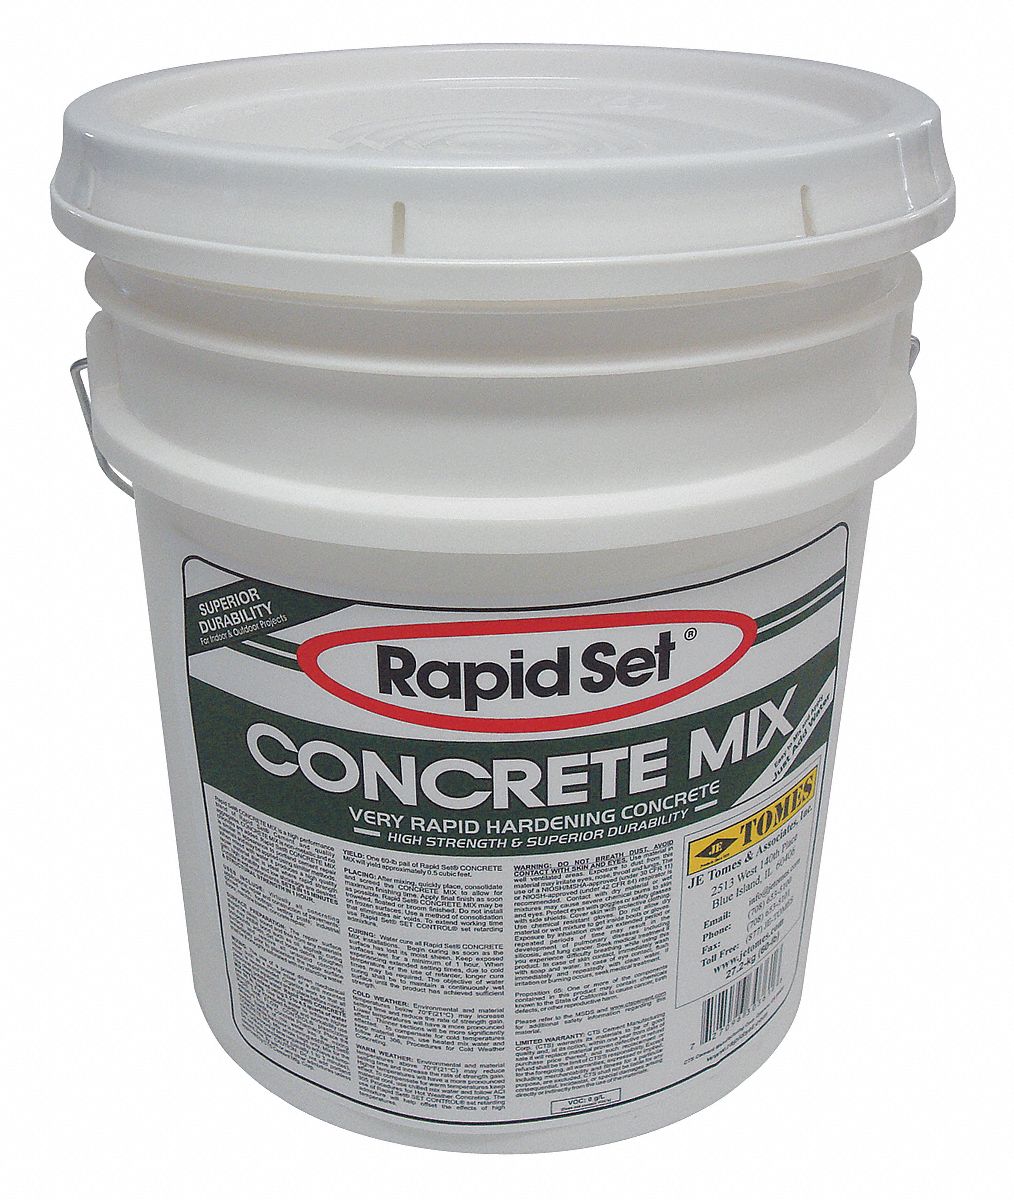 Concrete Mix: Concrete Mix, 60 lb Container Size, Pail, 1 hr Full Cure Time